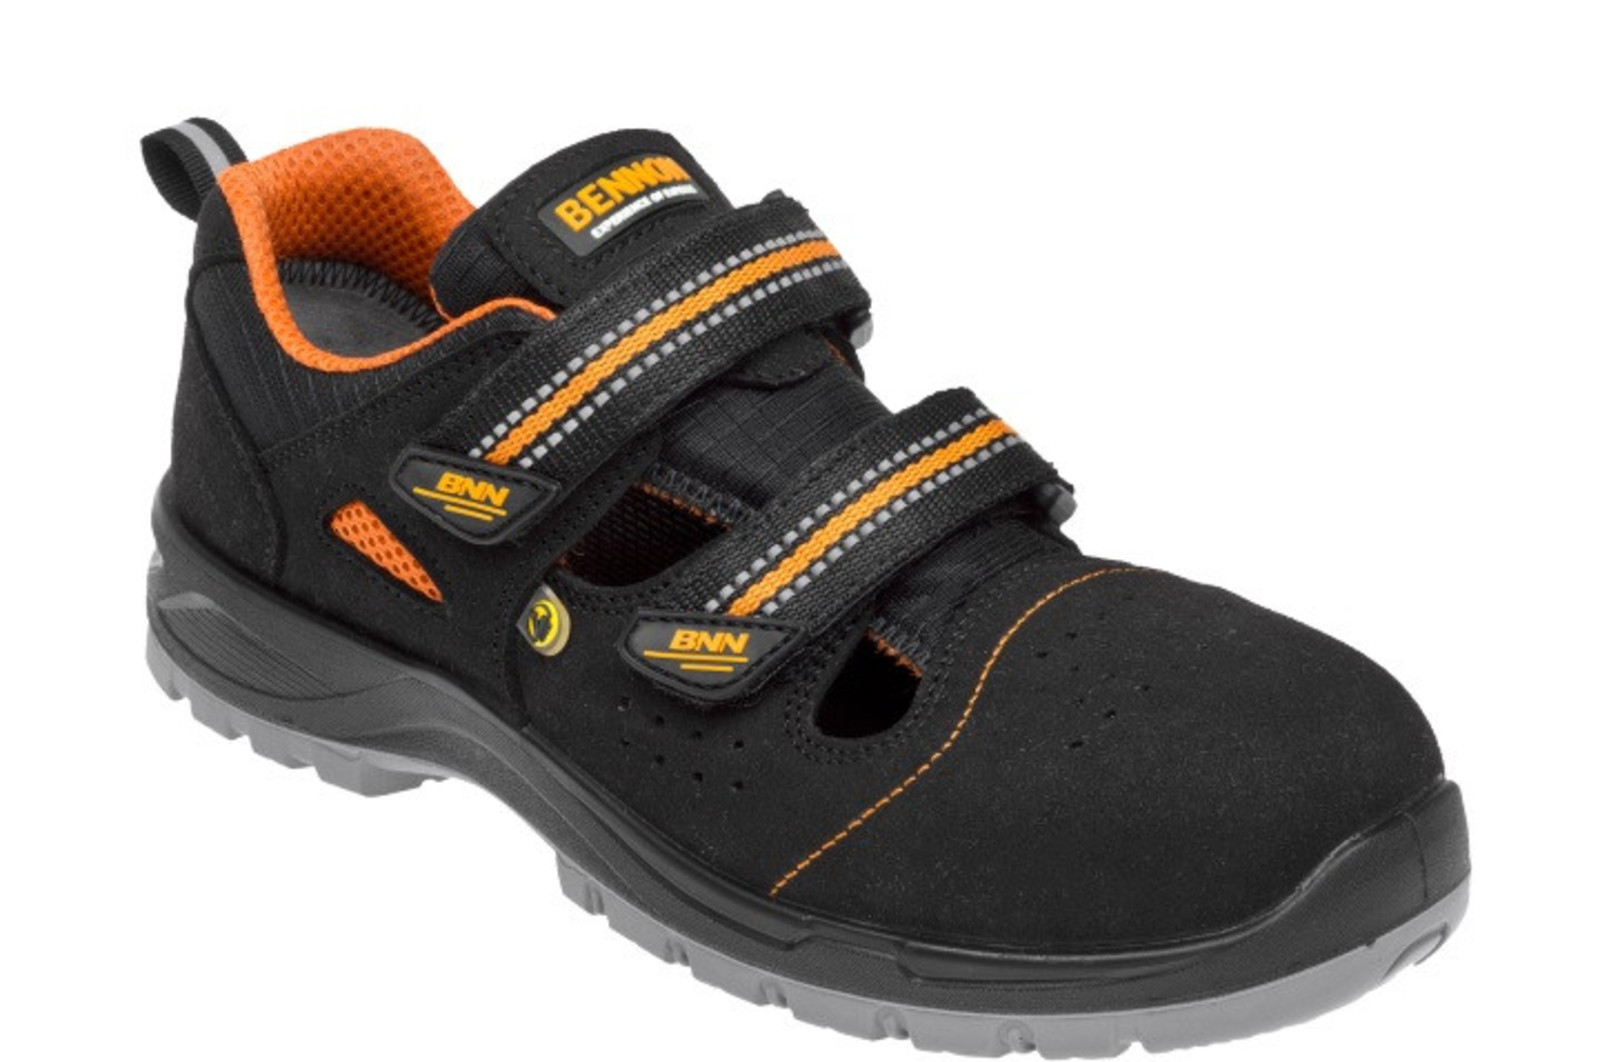 Bezpečnostné sandále Bennon Nux S1P ESD metal free - veľkosť: 45, farba: čierna